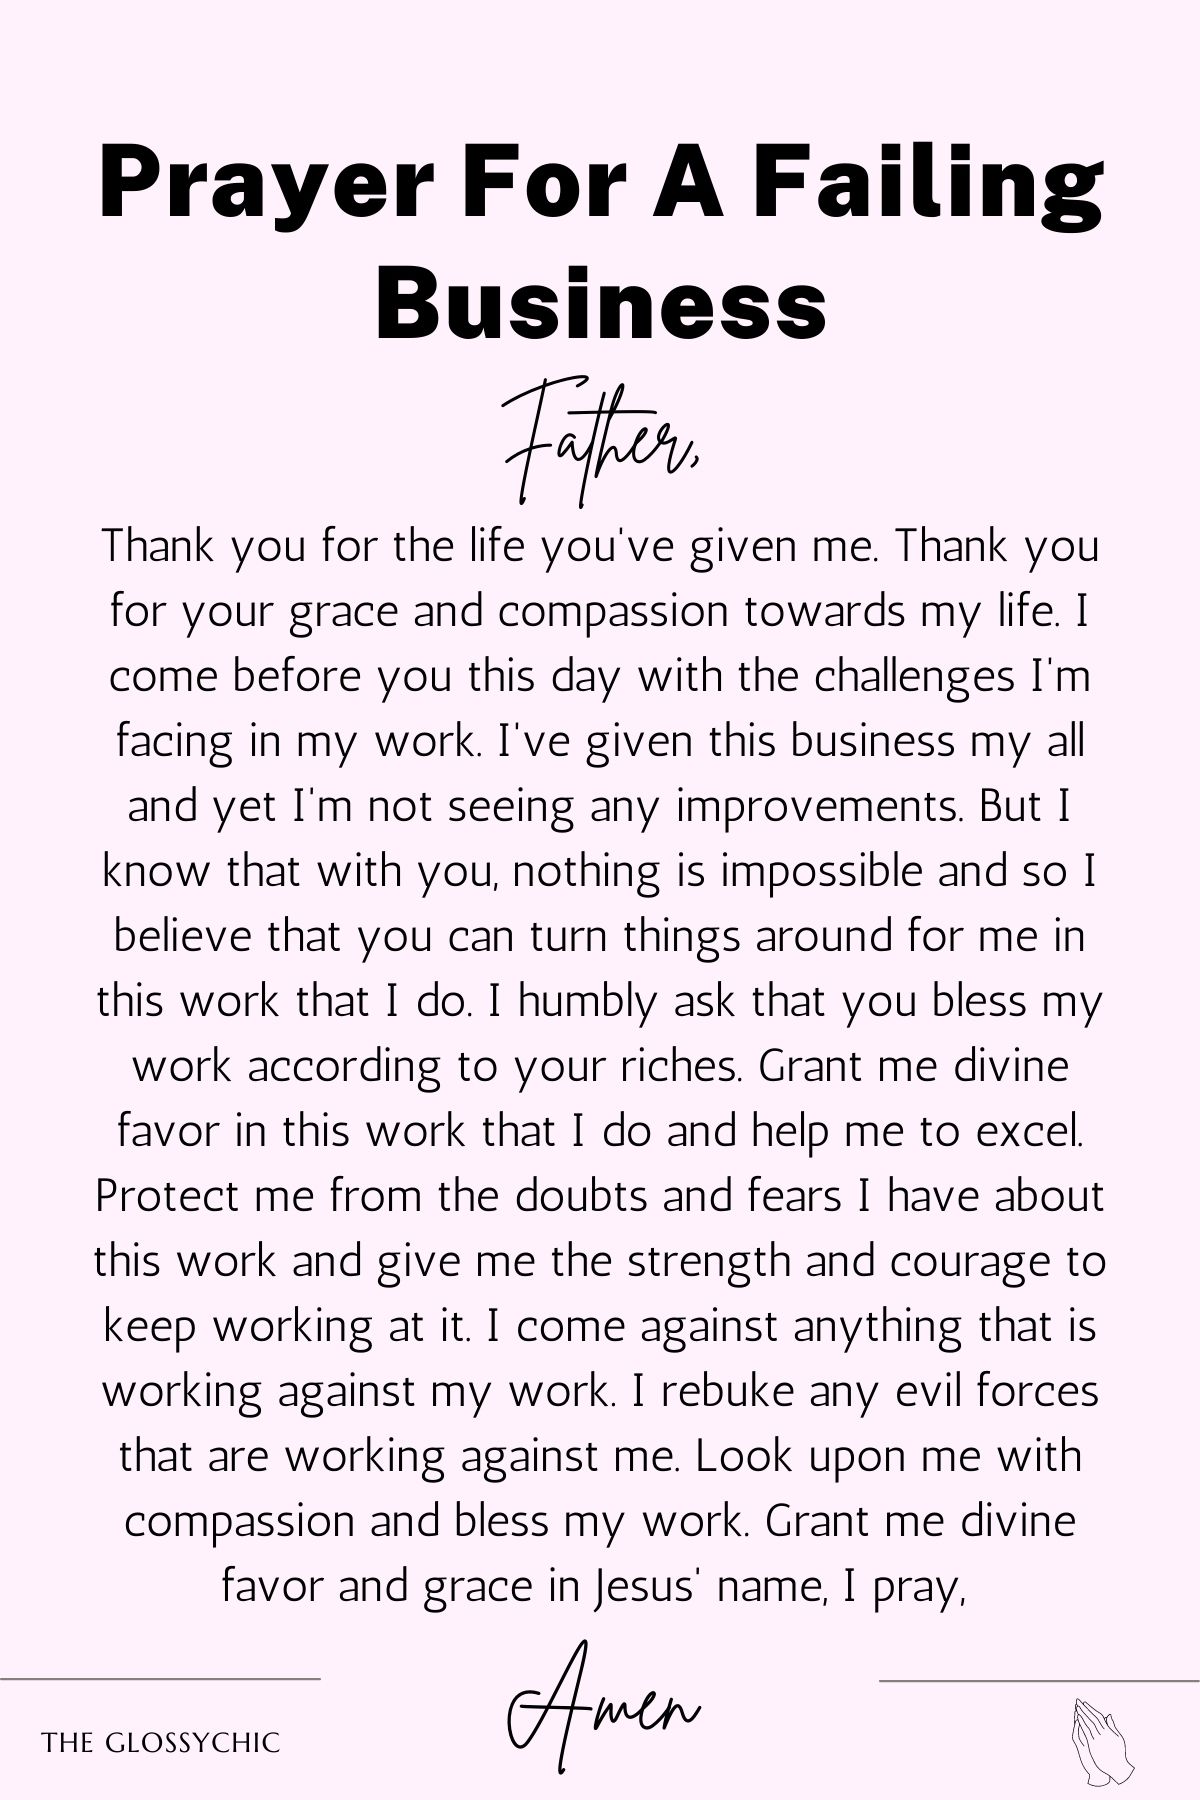 Prayer for a failing business